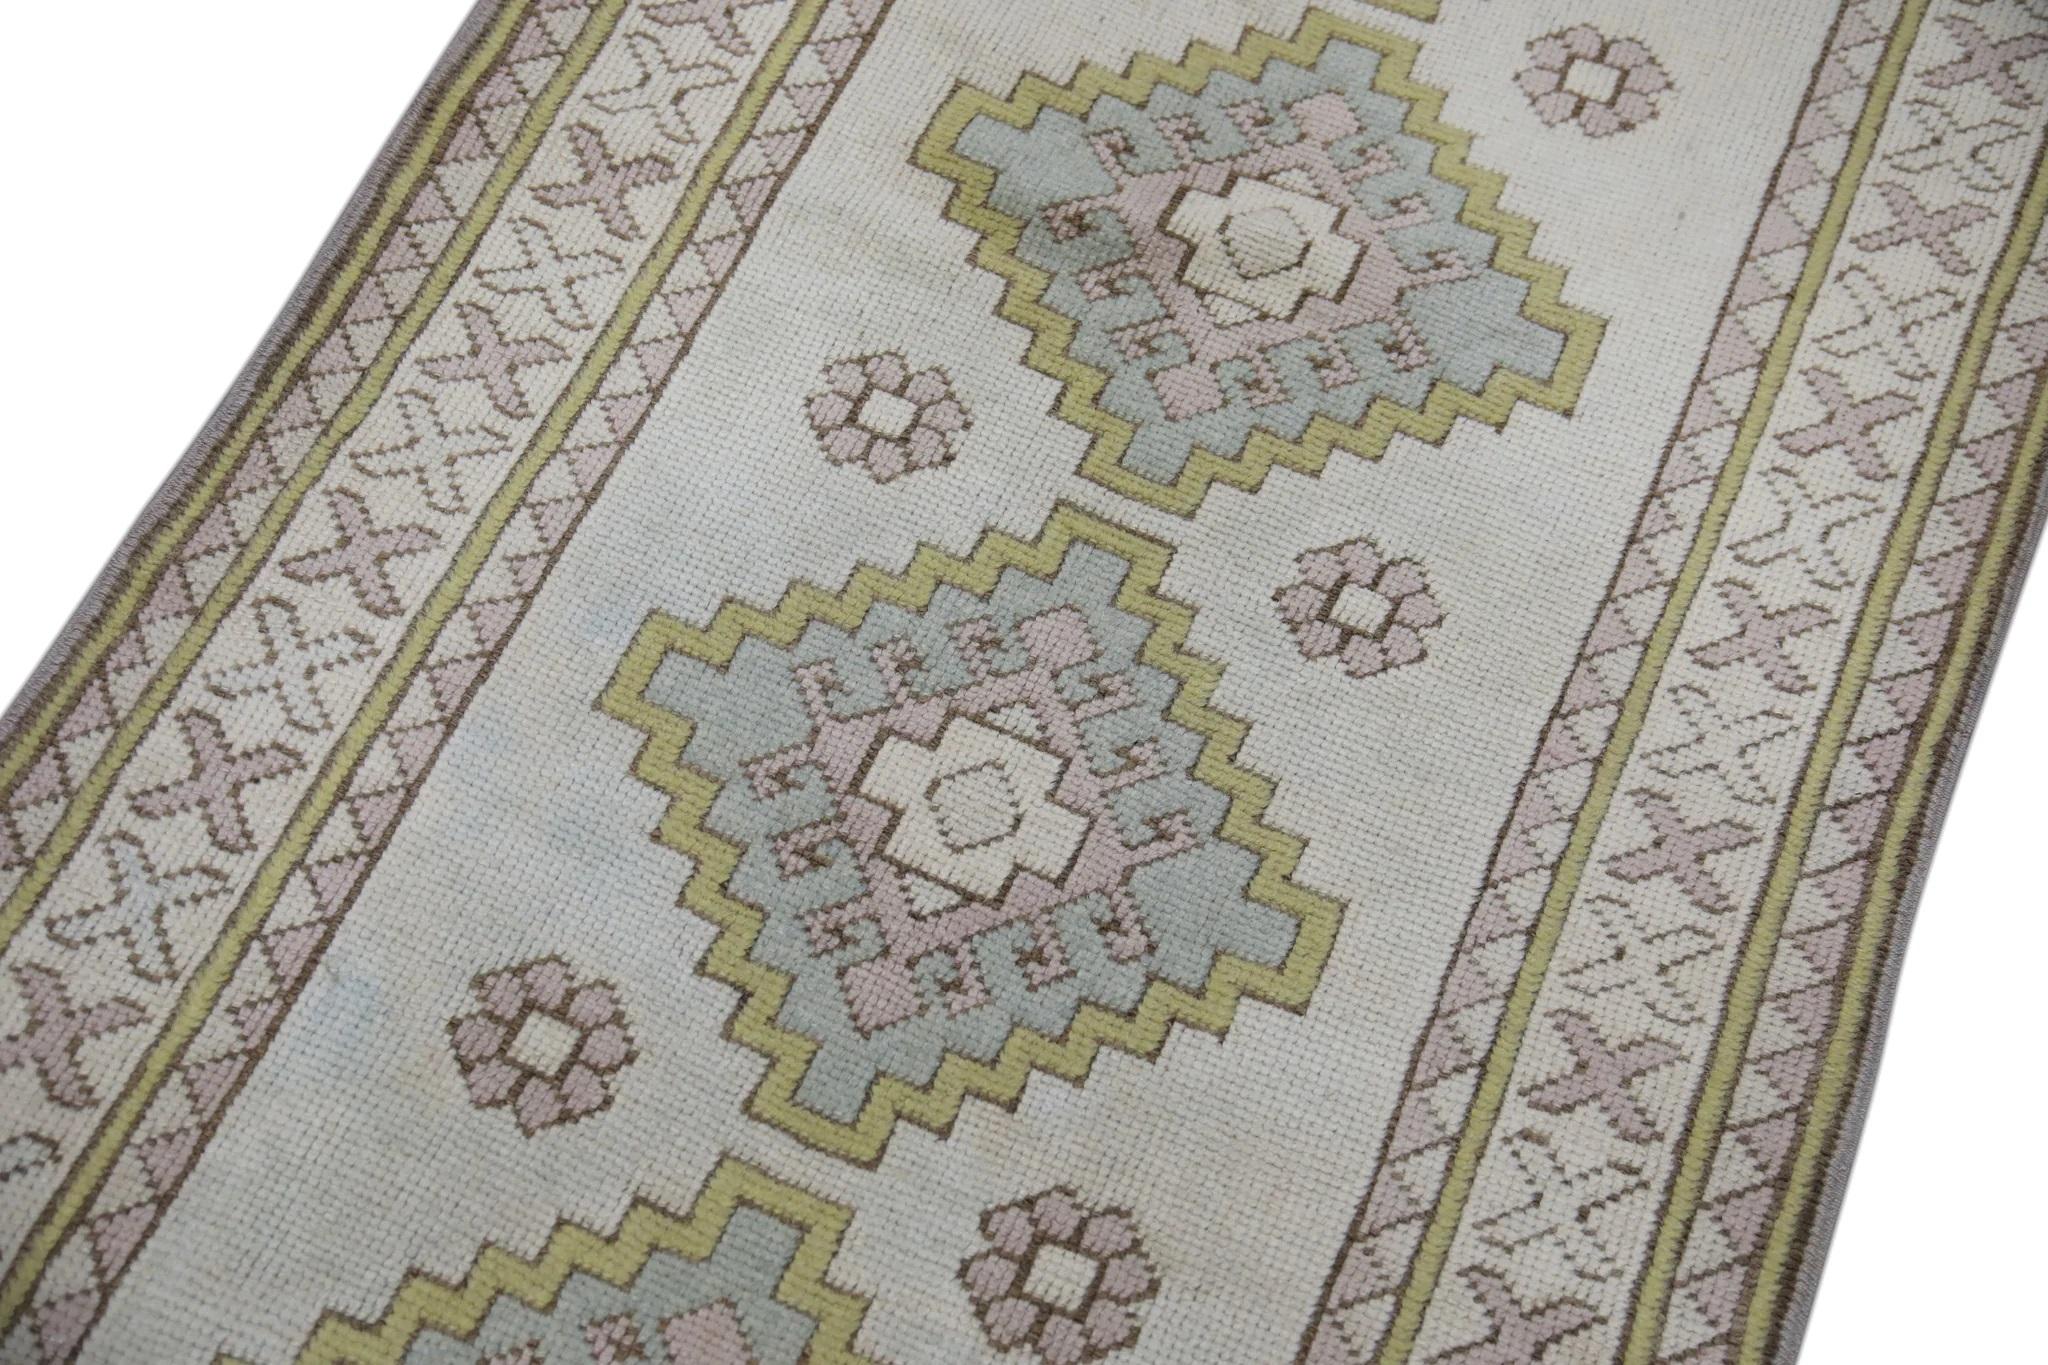 Wir präsentieren einen einzigartigen türkischen Teppich aus handgeknüpfter Wolle, der von geschickten Kunsthandwerkern mit Hilfe traditioneller, über Generationen weitergegebener Techniken sorgfältig hergestellt wird. Dieser exquisite Teppich rühmt